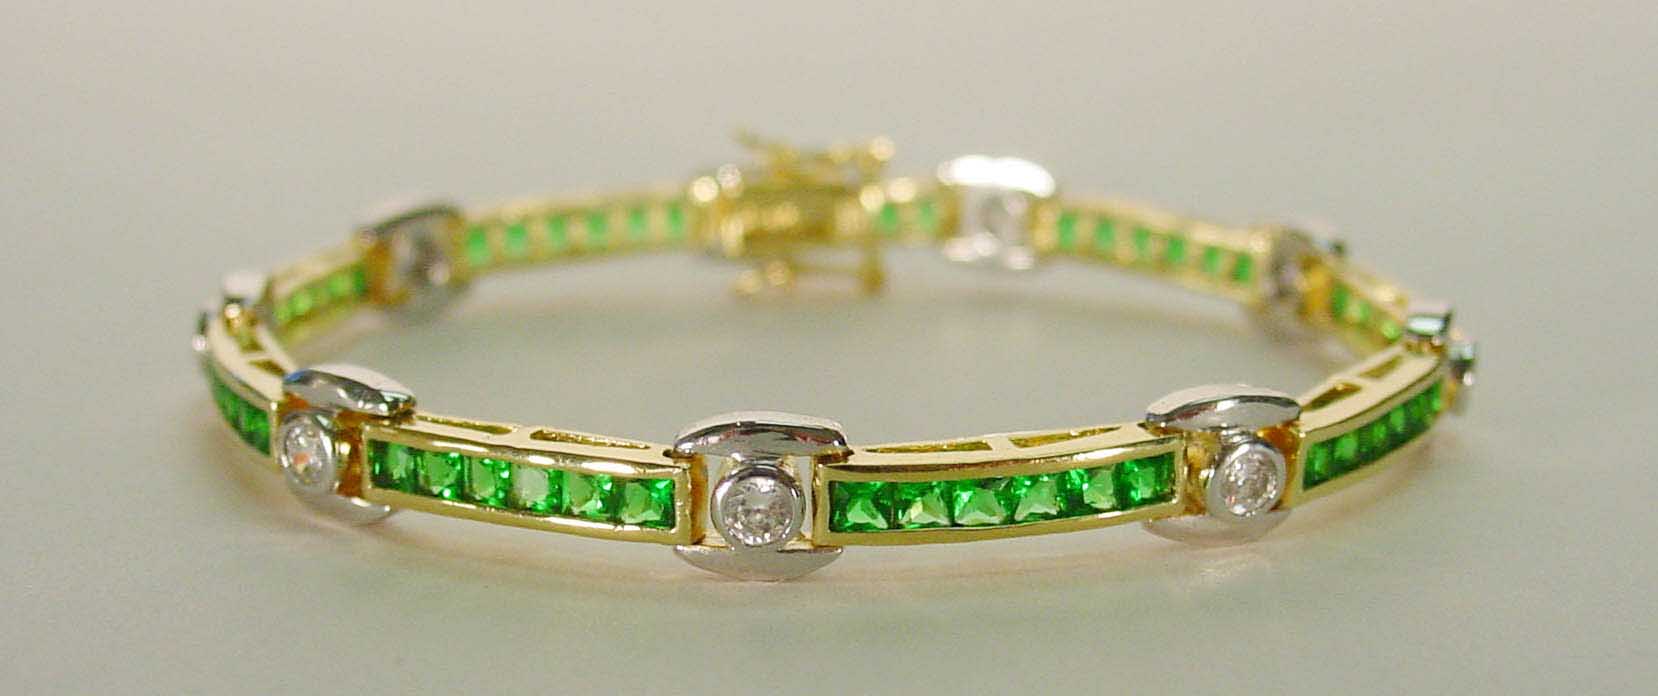 Emerald CZ & clear CZ two-tone bracelet